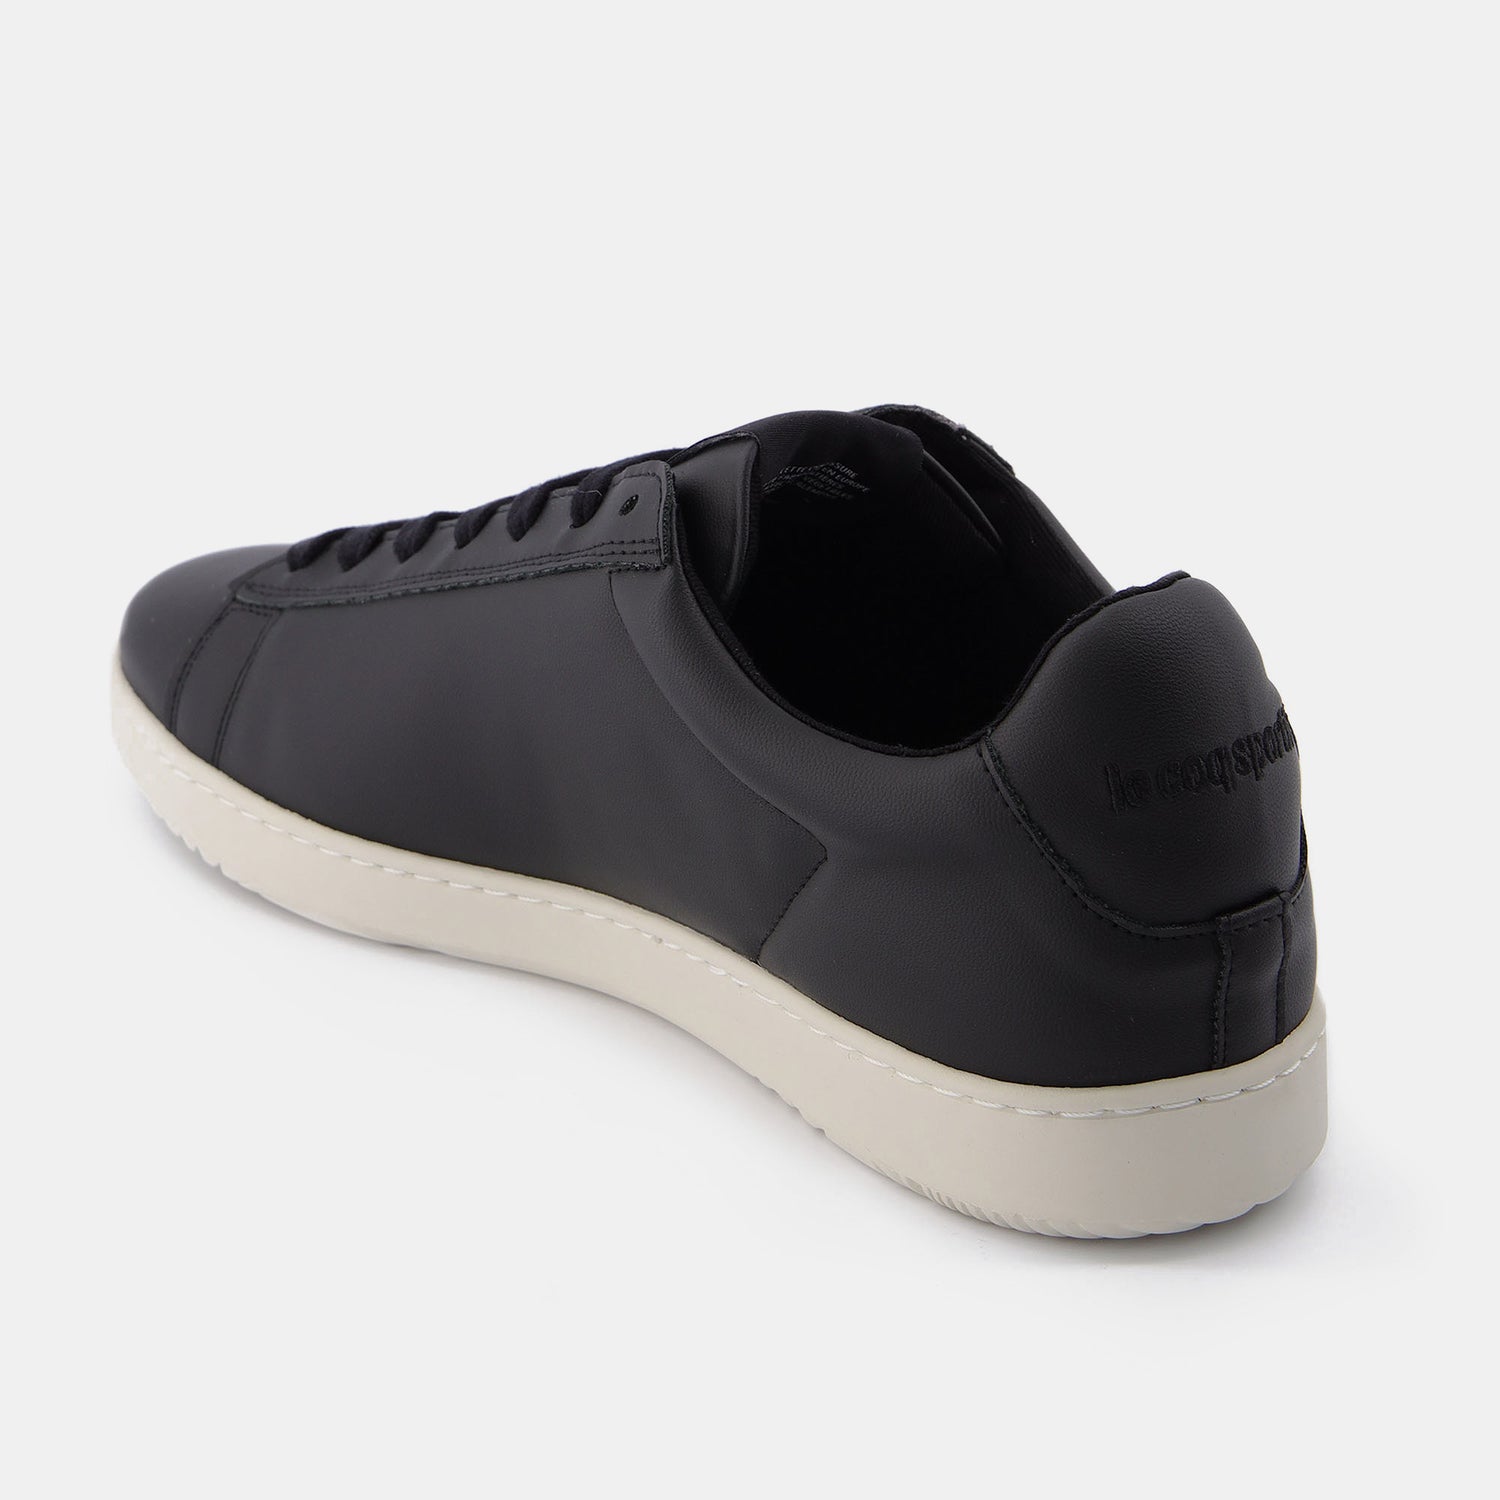 2310194-GAIA black  | Zapatos GAIA Unisex